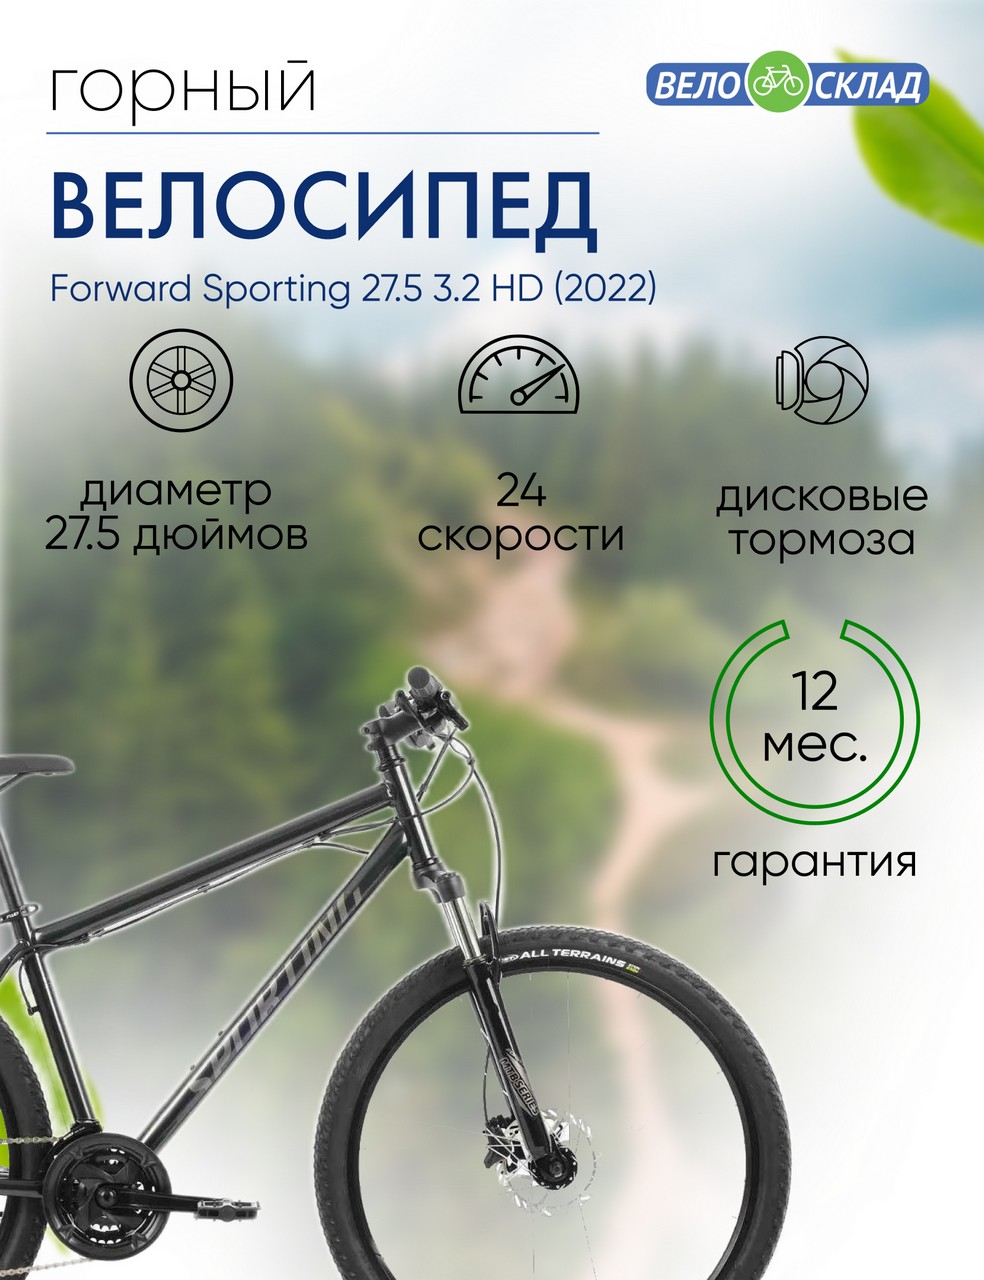 Горный велосипед Forward Sporting 27.5 3.2 HD, год 2022, цвет Черный, ростовка 19